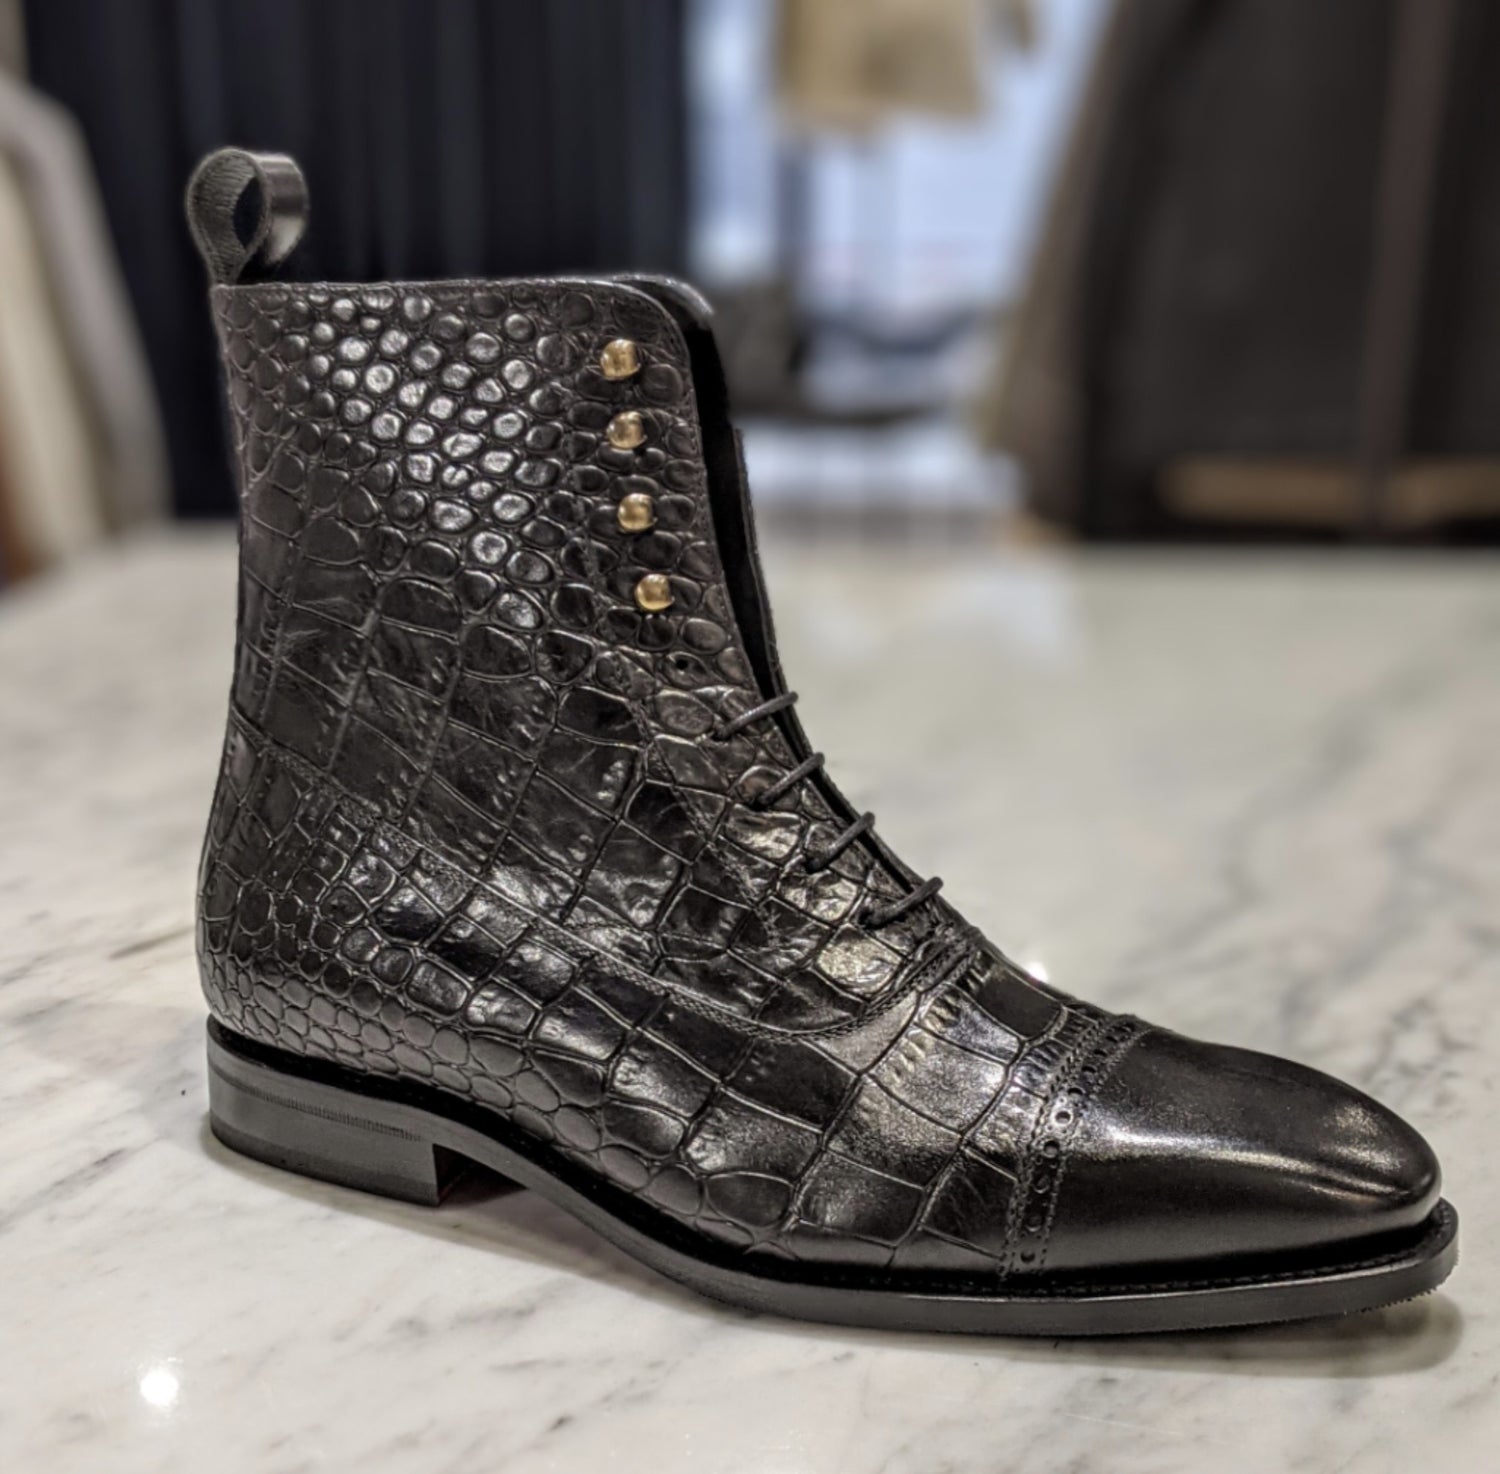 Custom black luxury boots